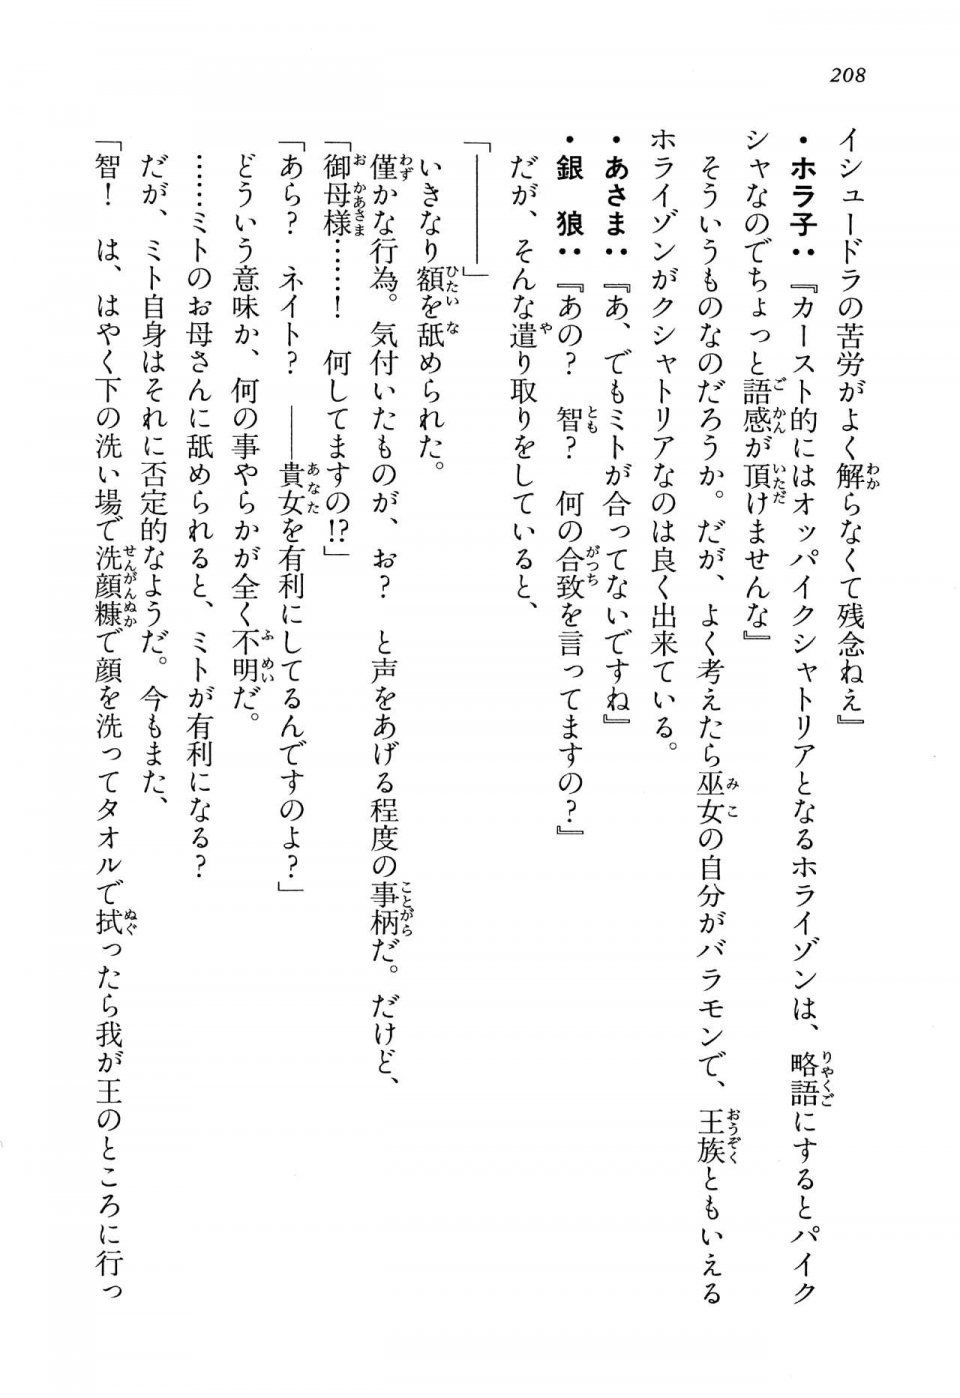 Kyoukai Senjou no Horizon LN Vol 13(6A) - Photo #208